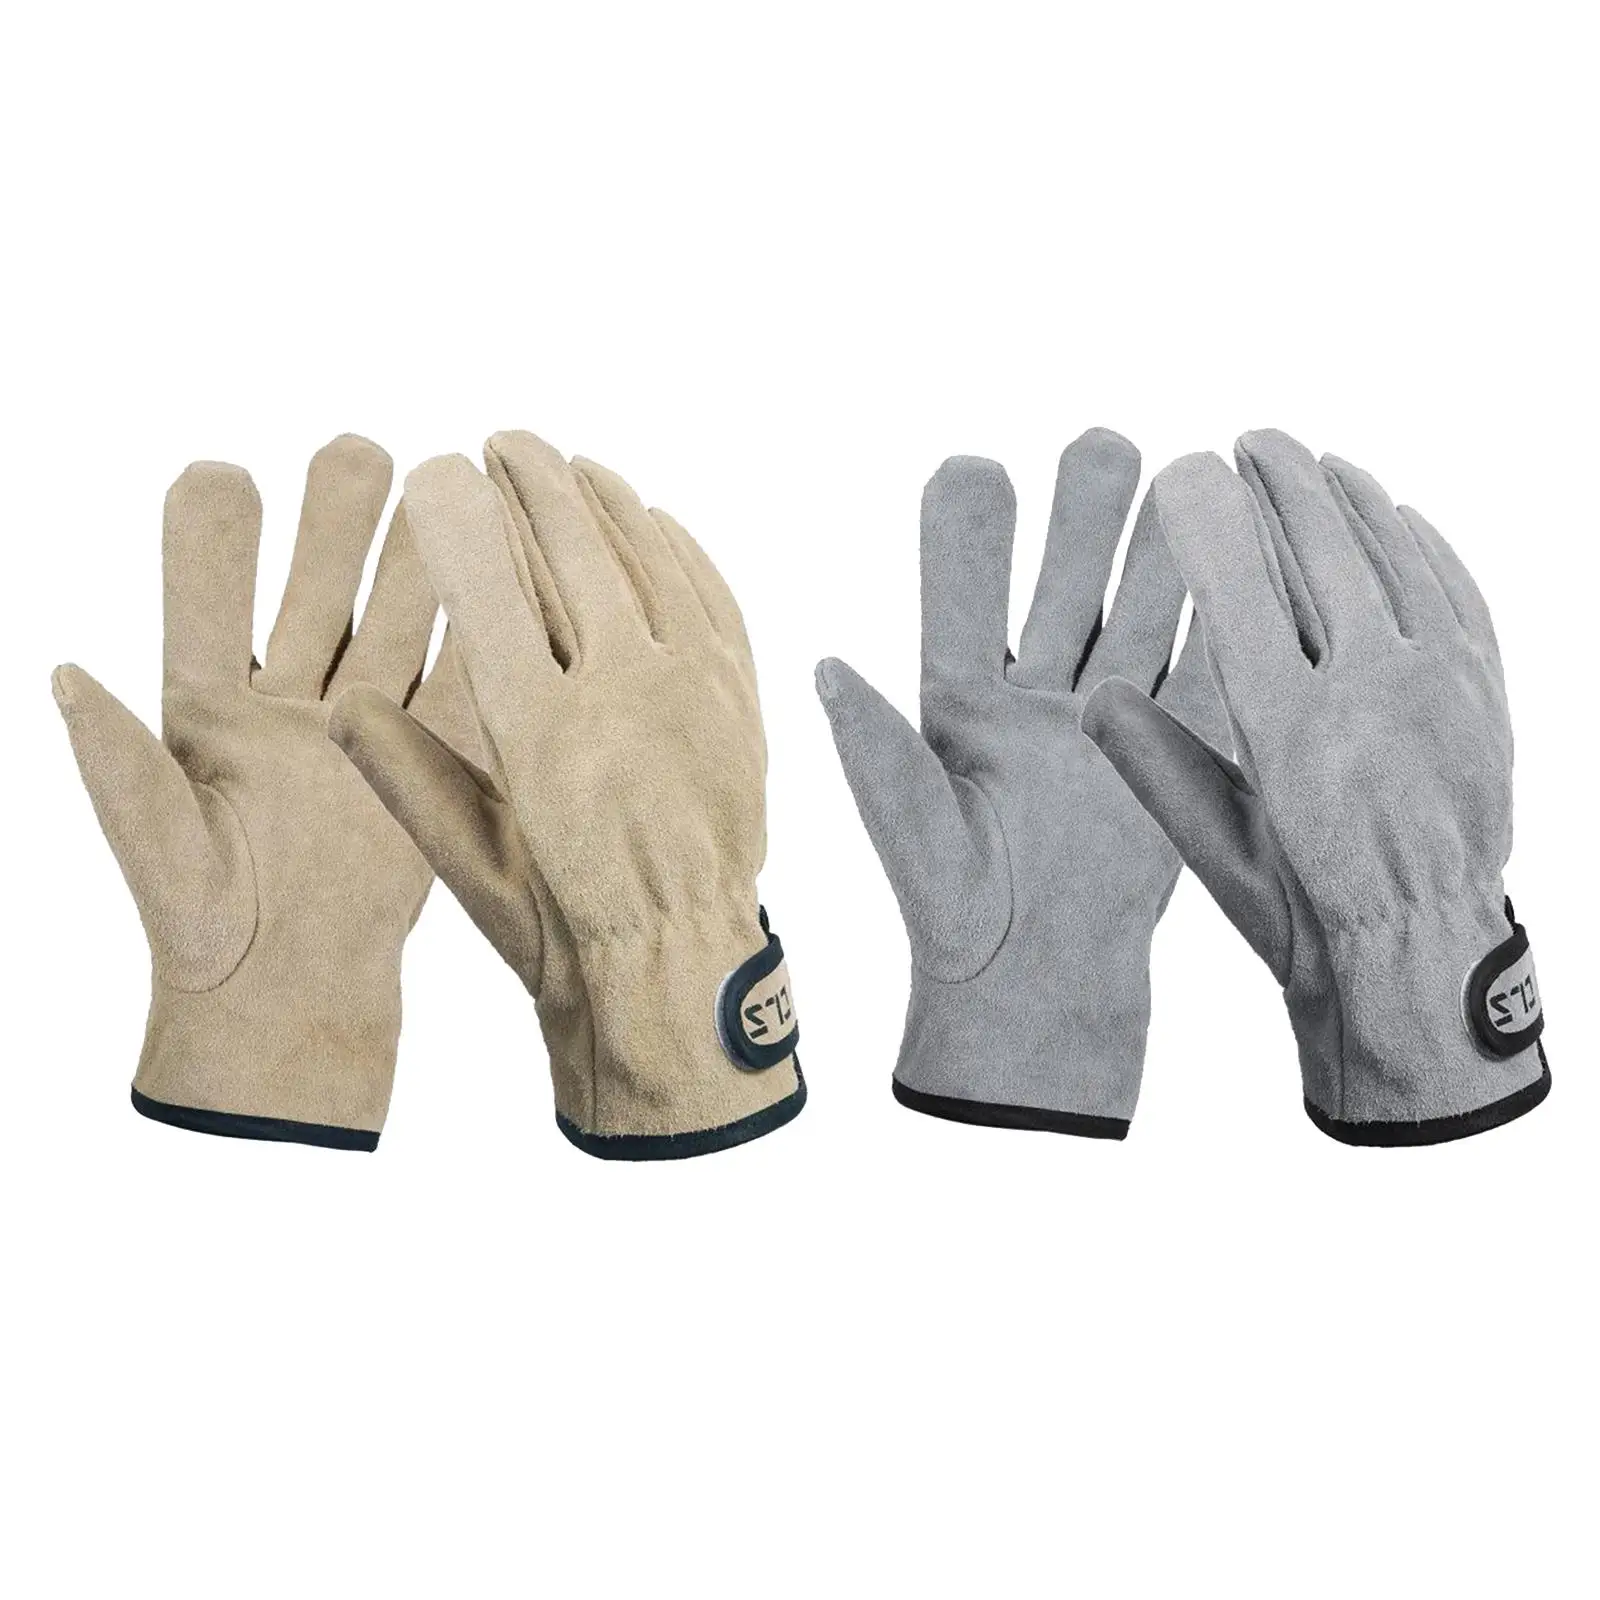 Work Gloves Adjustable Wrist Gardening Gloves, Good Grip for